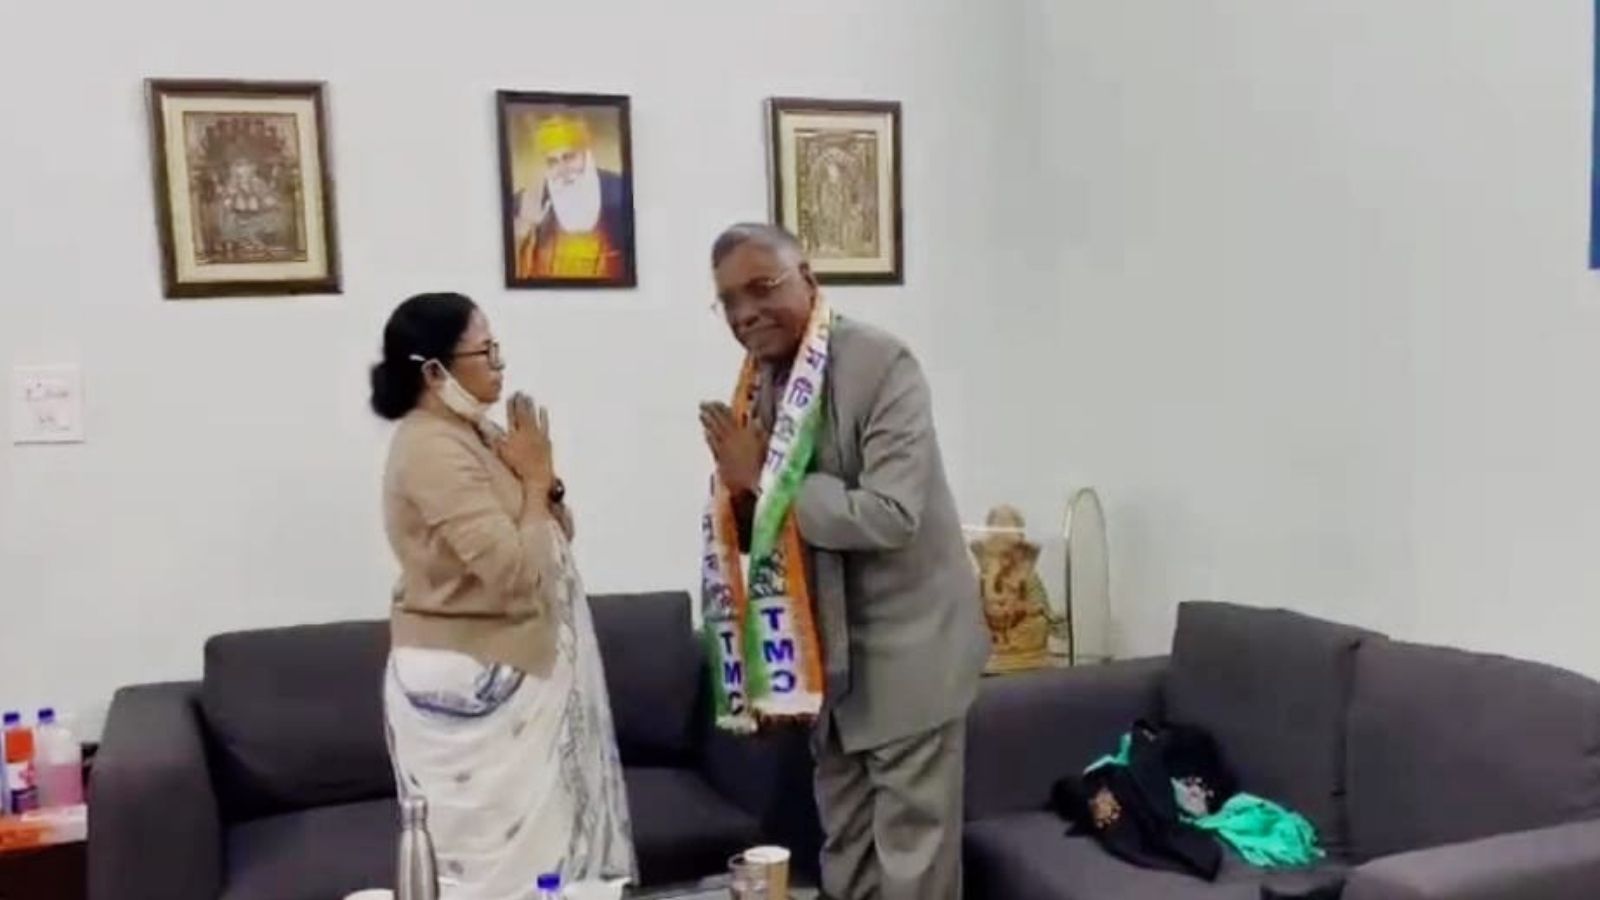 Mamata Banerjee Delhi Visit: மேற்குவங்க முதல்வர் மம்தா பானர்ஜி, சுப்ரமணிய சுவாமியை சந்திப்பதாக தகவல்.